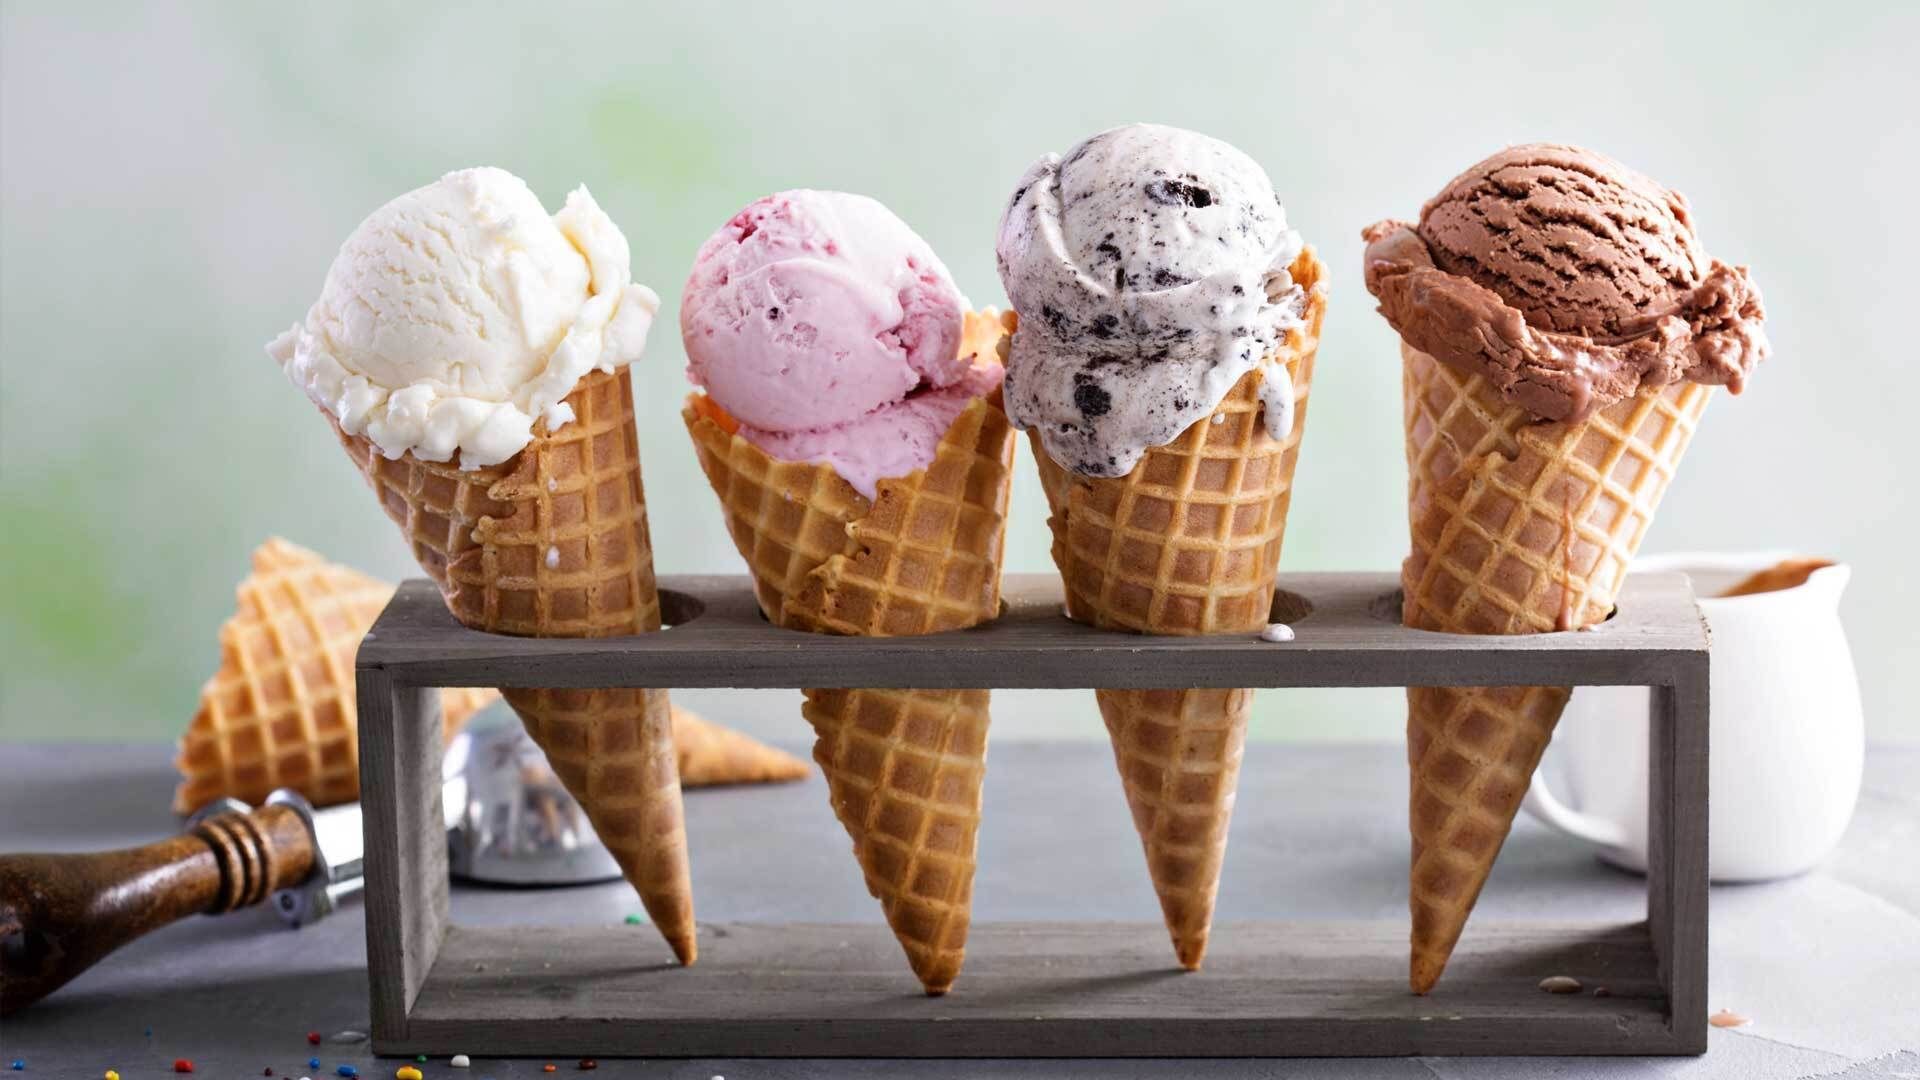 Diese 5 Eissorten haben unter 80 Kalorien & sind gesund